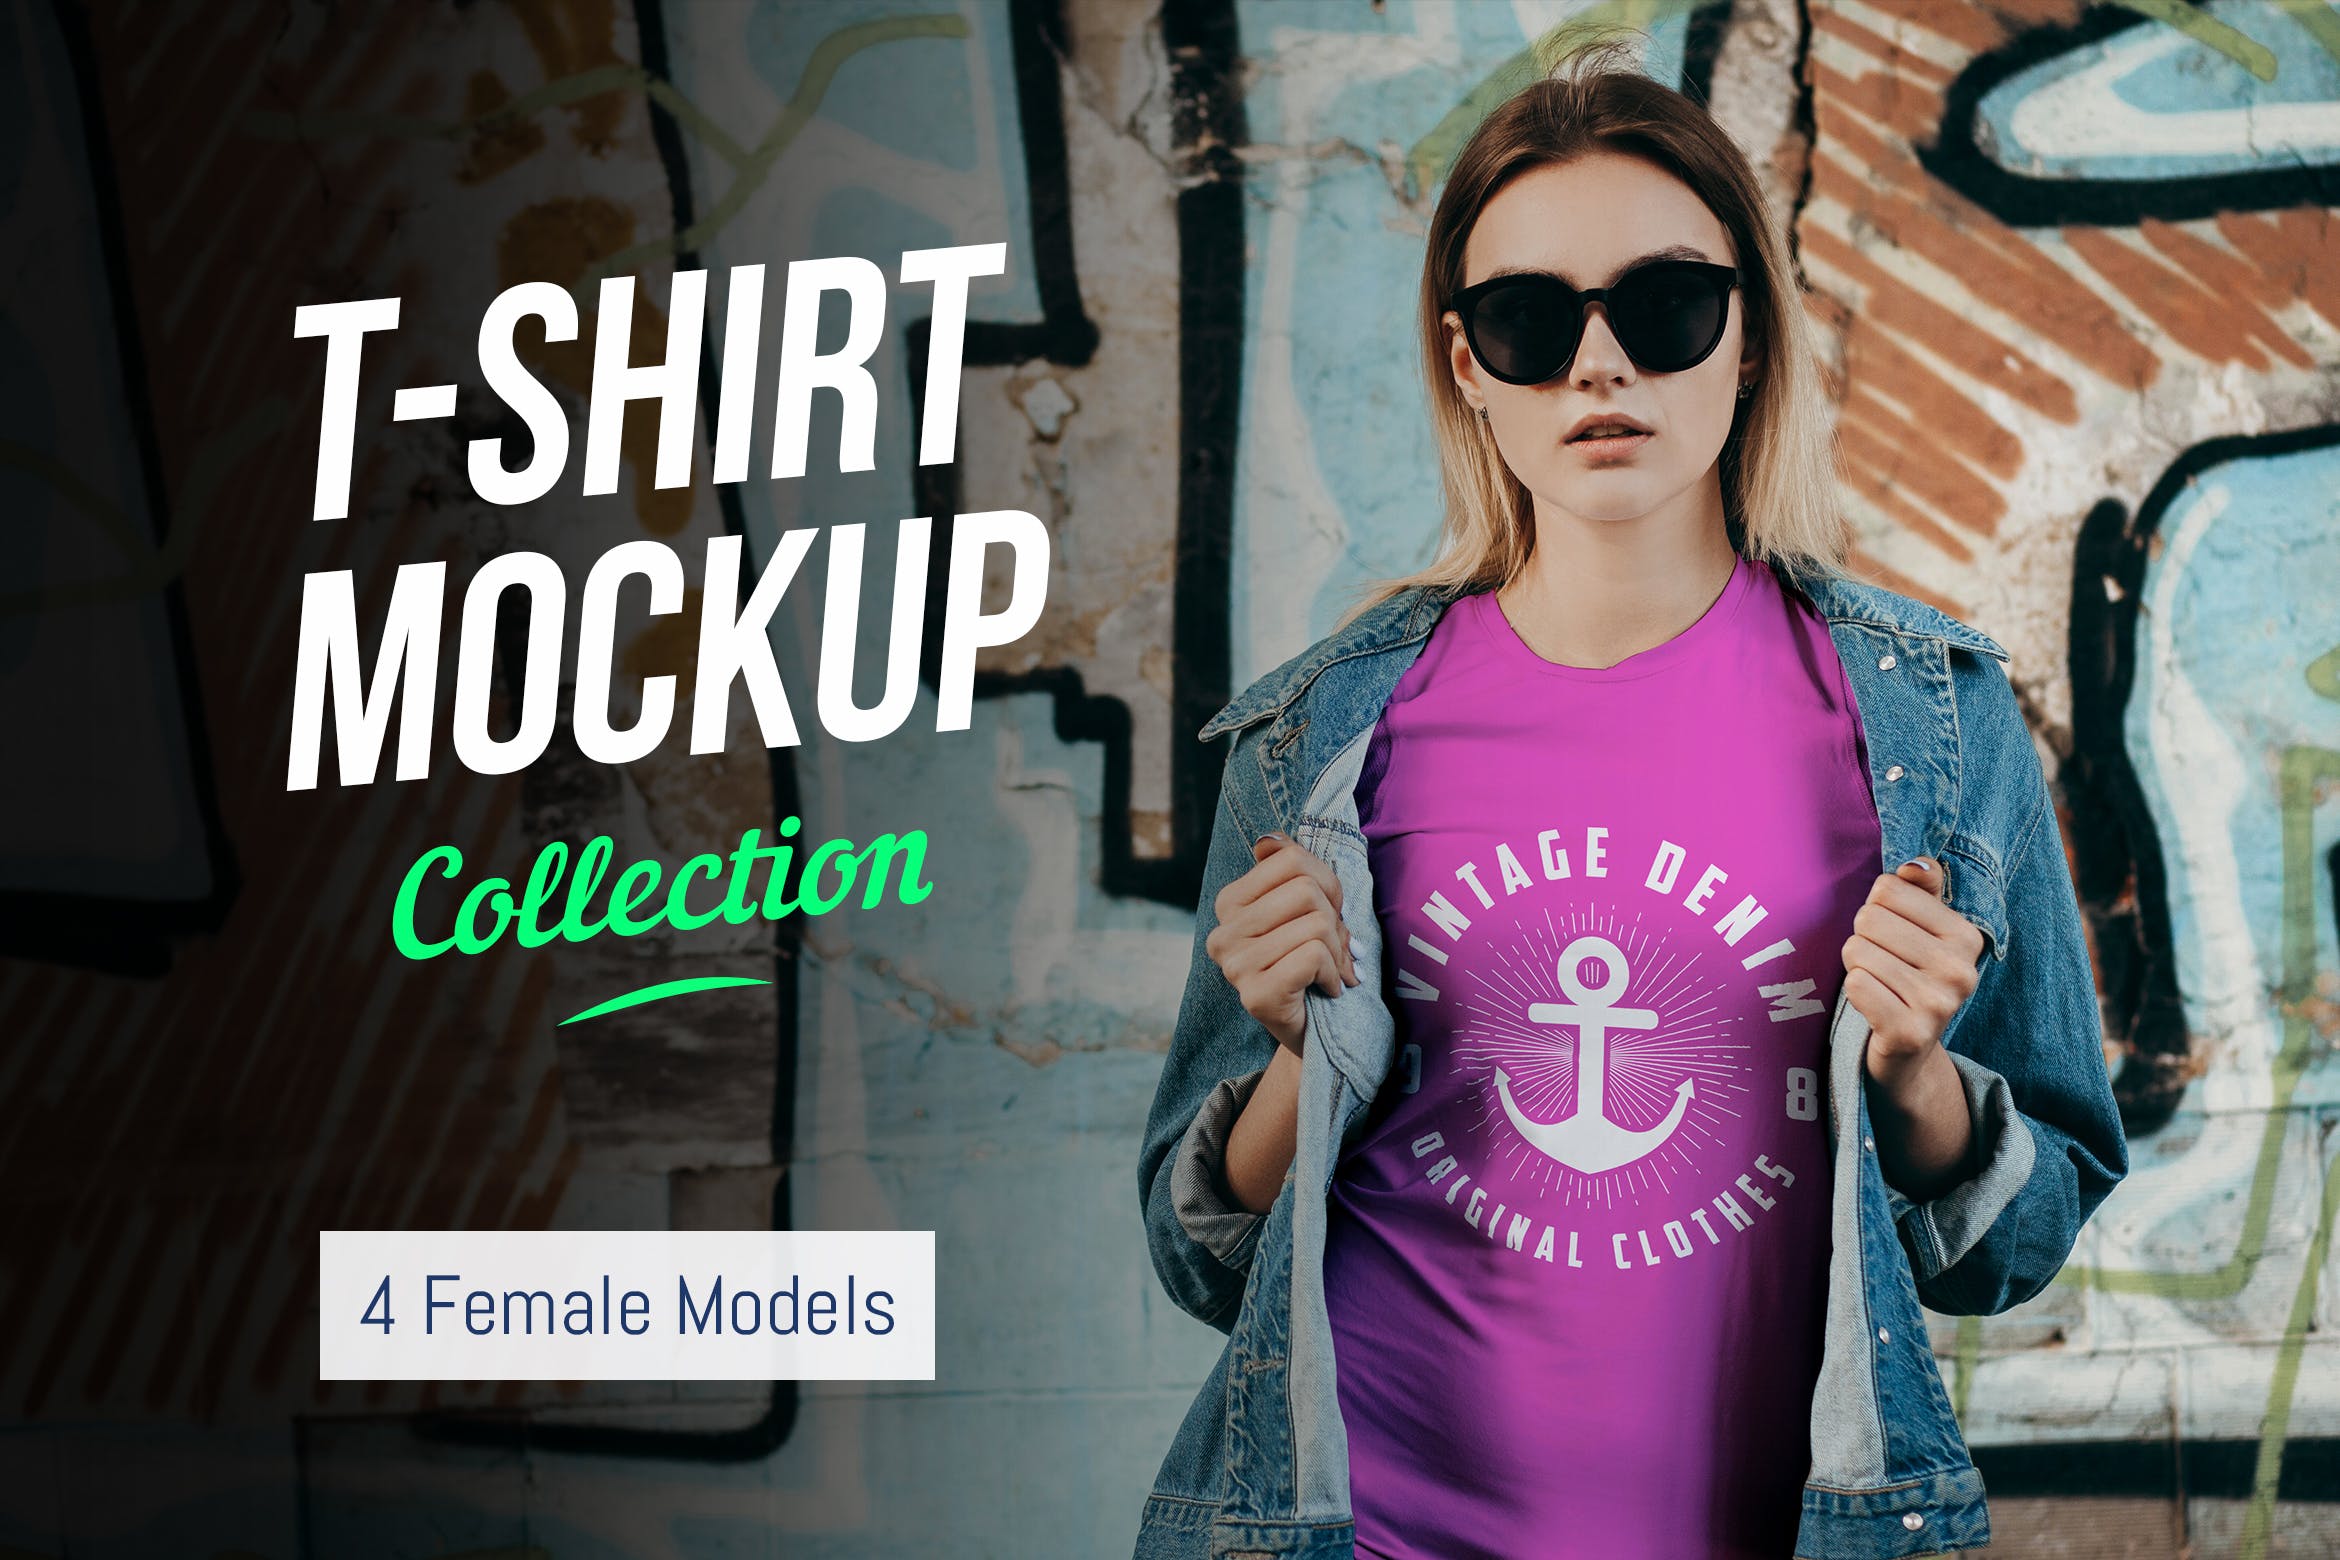 女士T恤印花设计效果图样机非凡图库精选合集v02 T-Shirt Mockup Collection 02插图